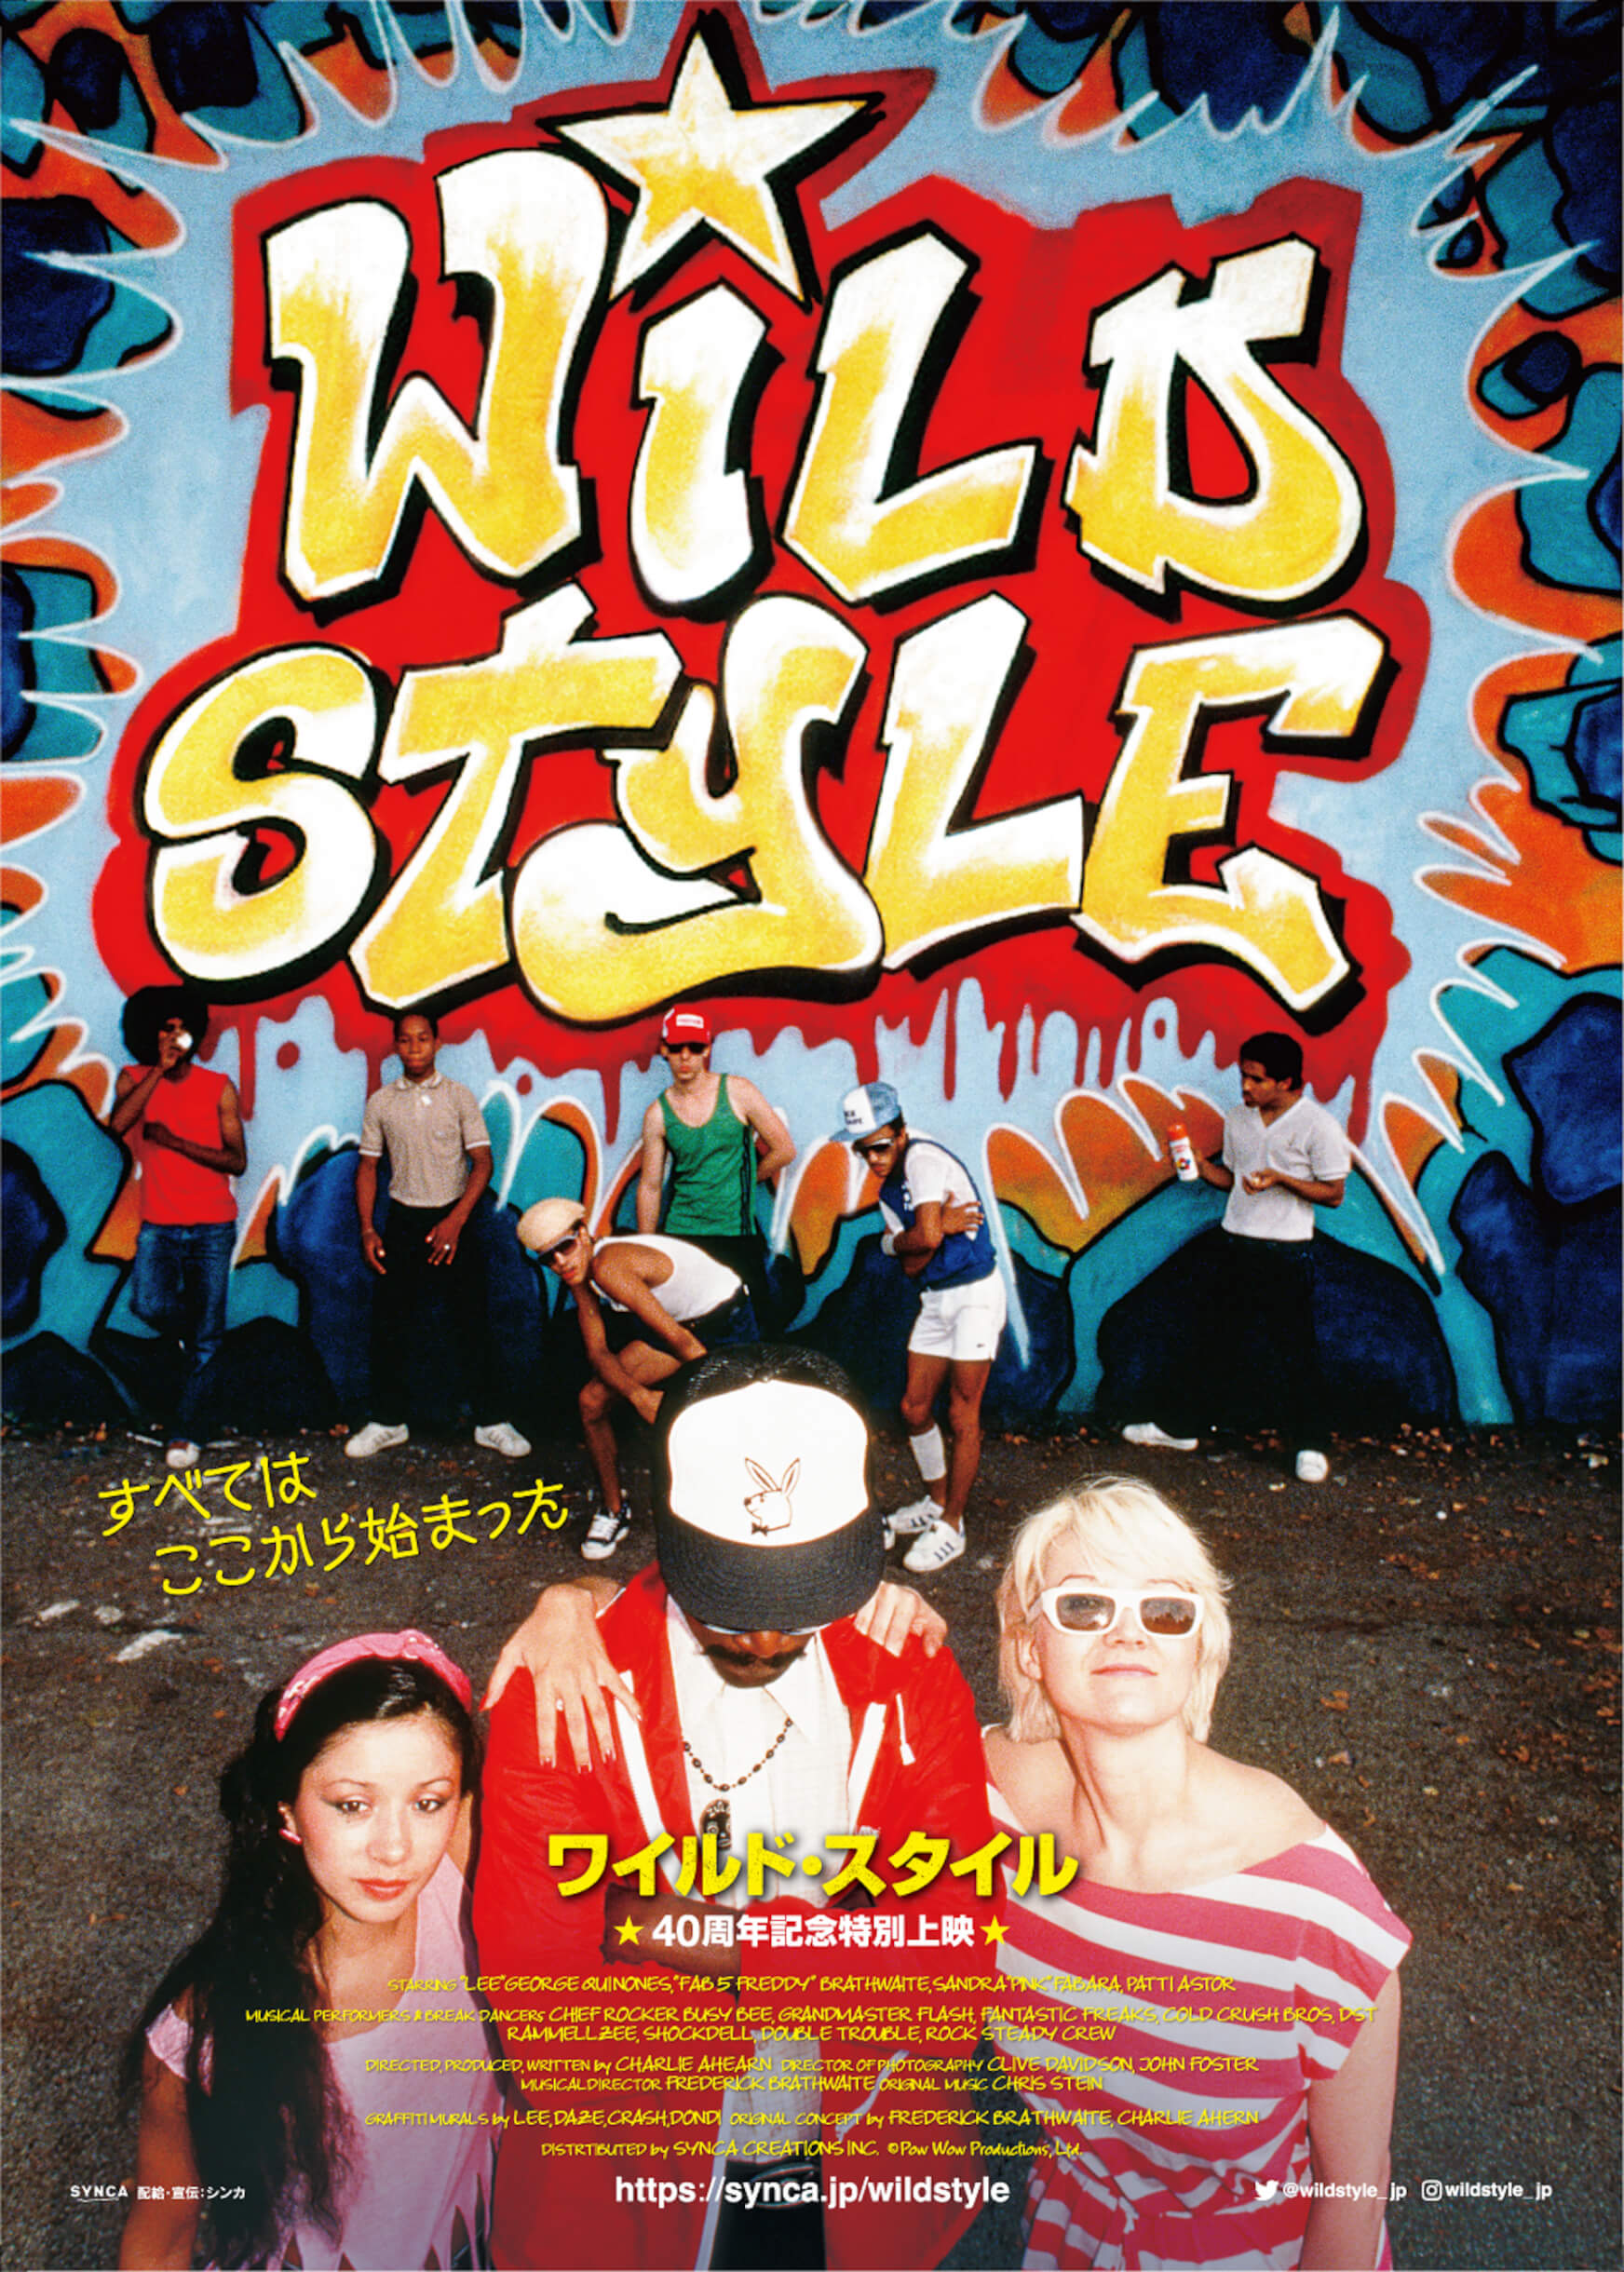 見えざる人間のユートピアを構想した伝説的傑作──映画『Wild Style』 interview220823_wildstyle-01